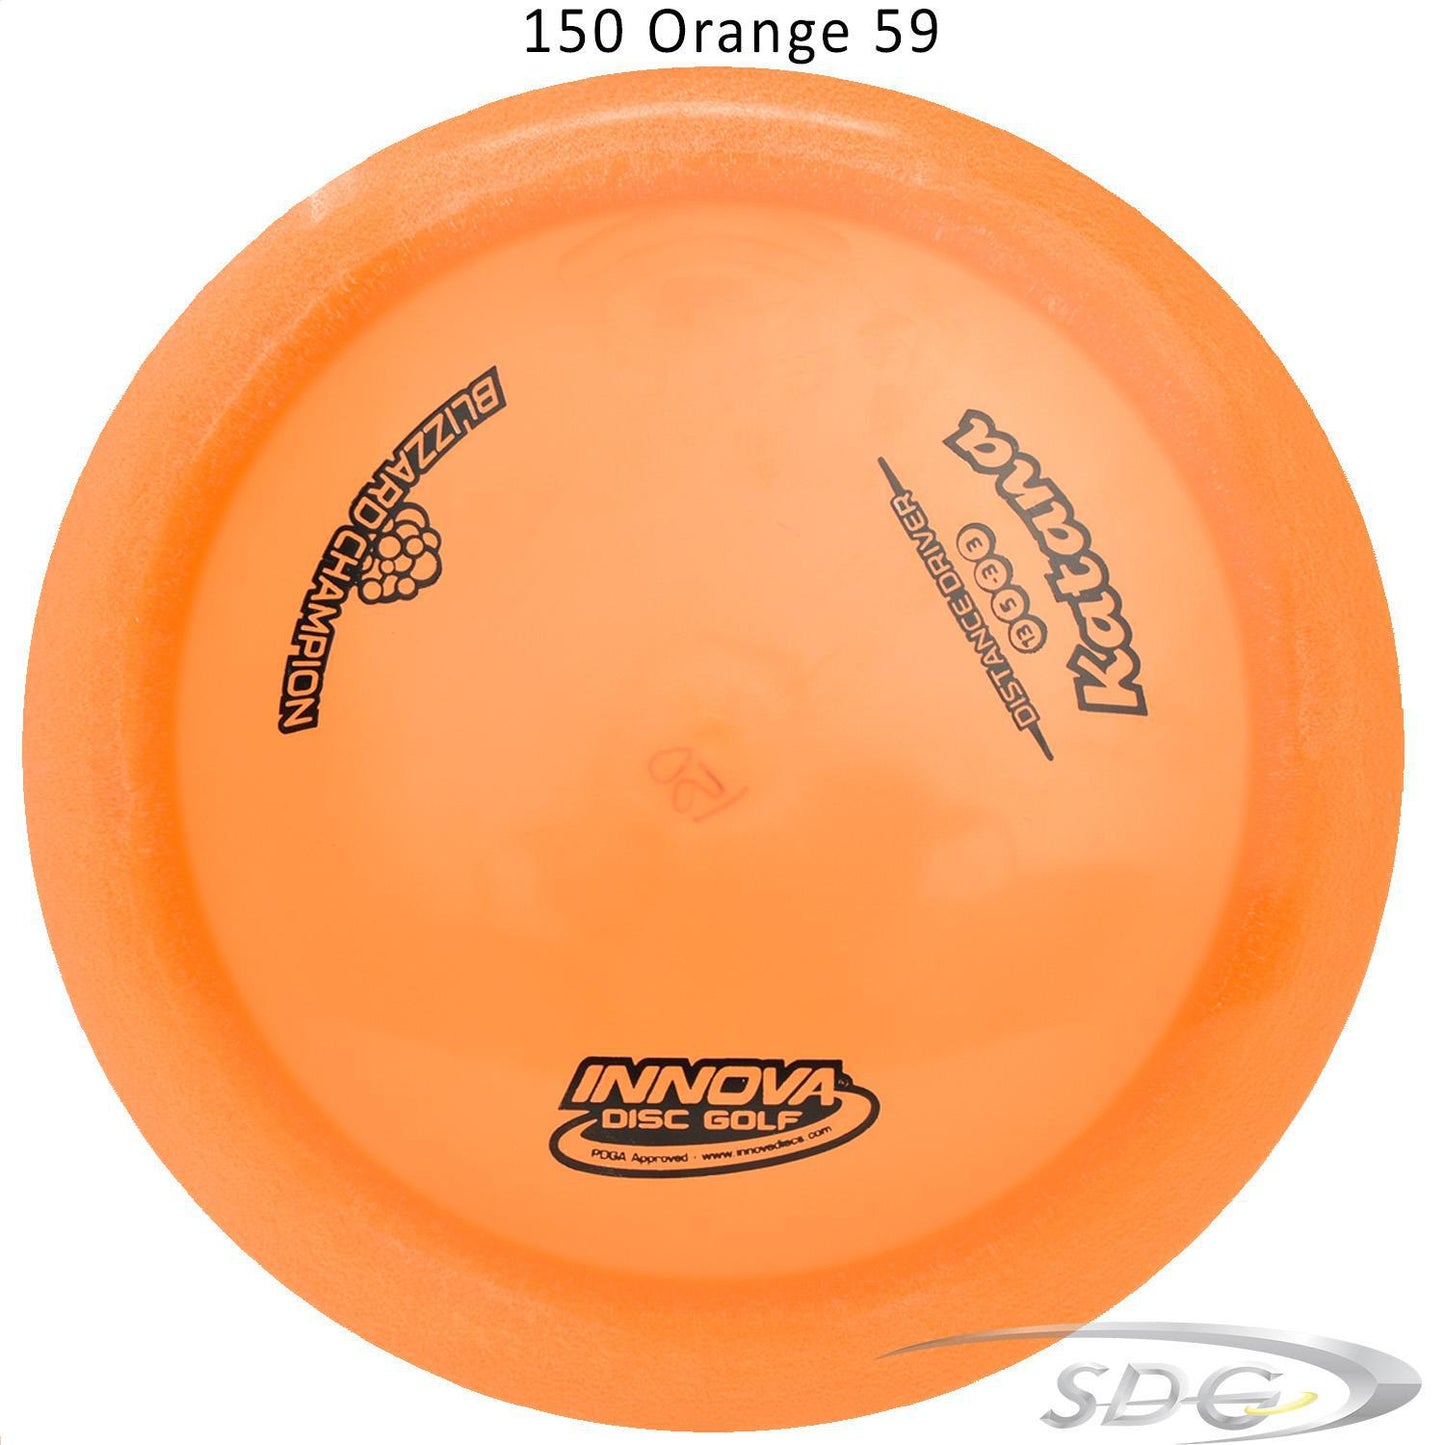 innova-blizzard-champion-katana-disc-golf-distance-driver 150 Orange 59